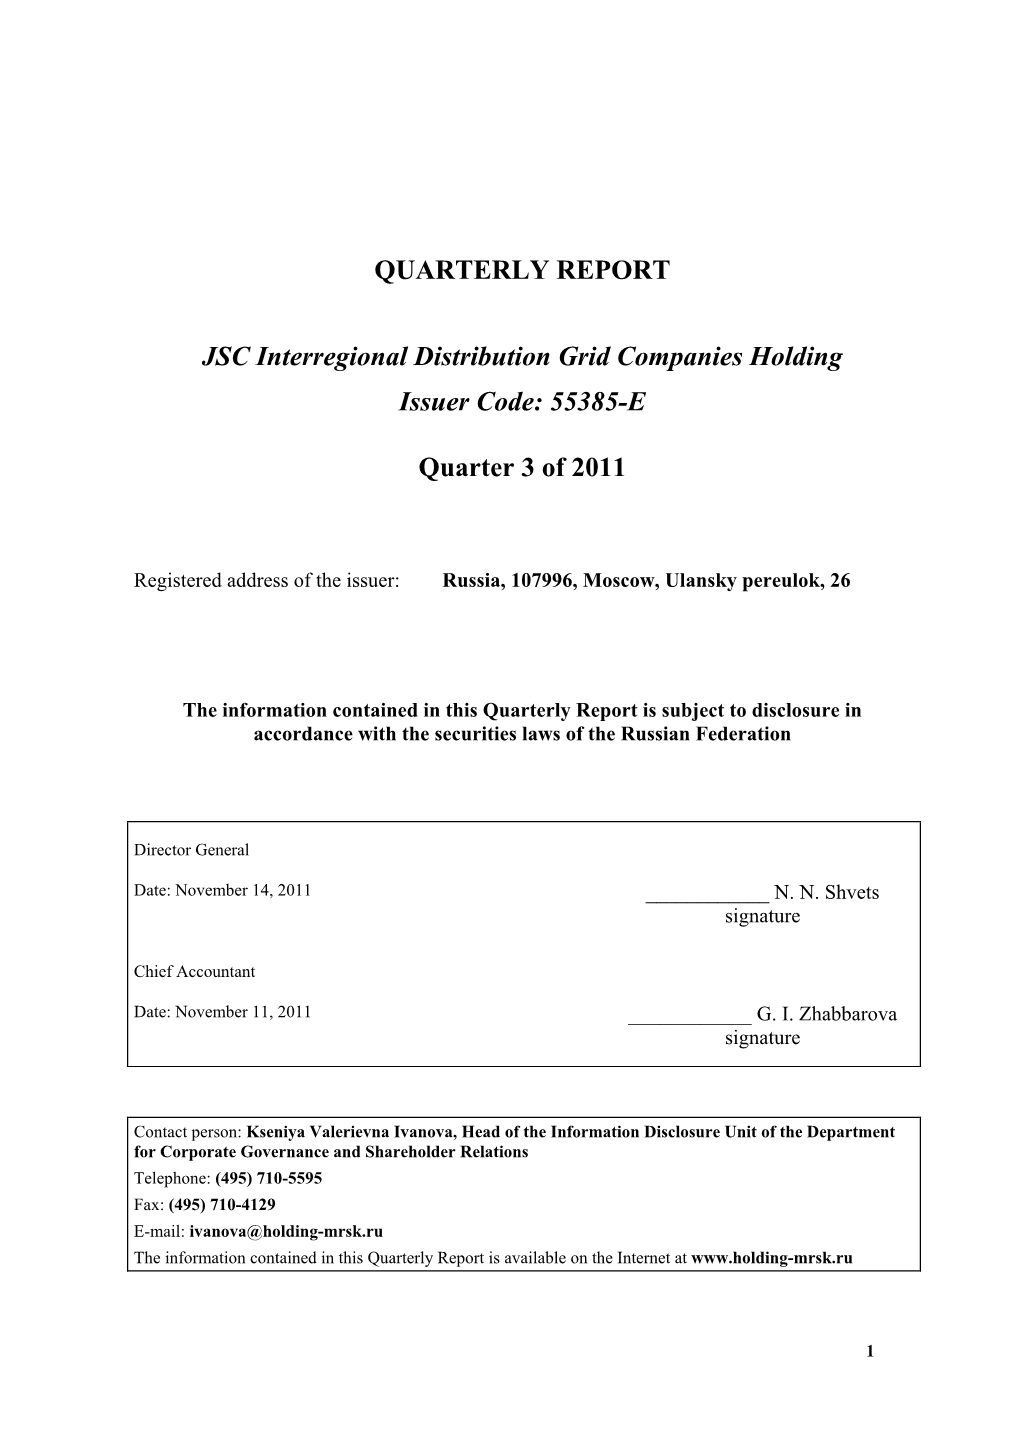 QUARTERLY REPORT Quarter 3 of 2011